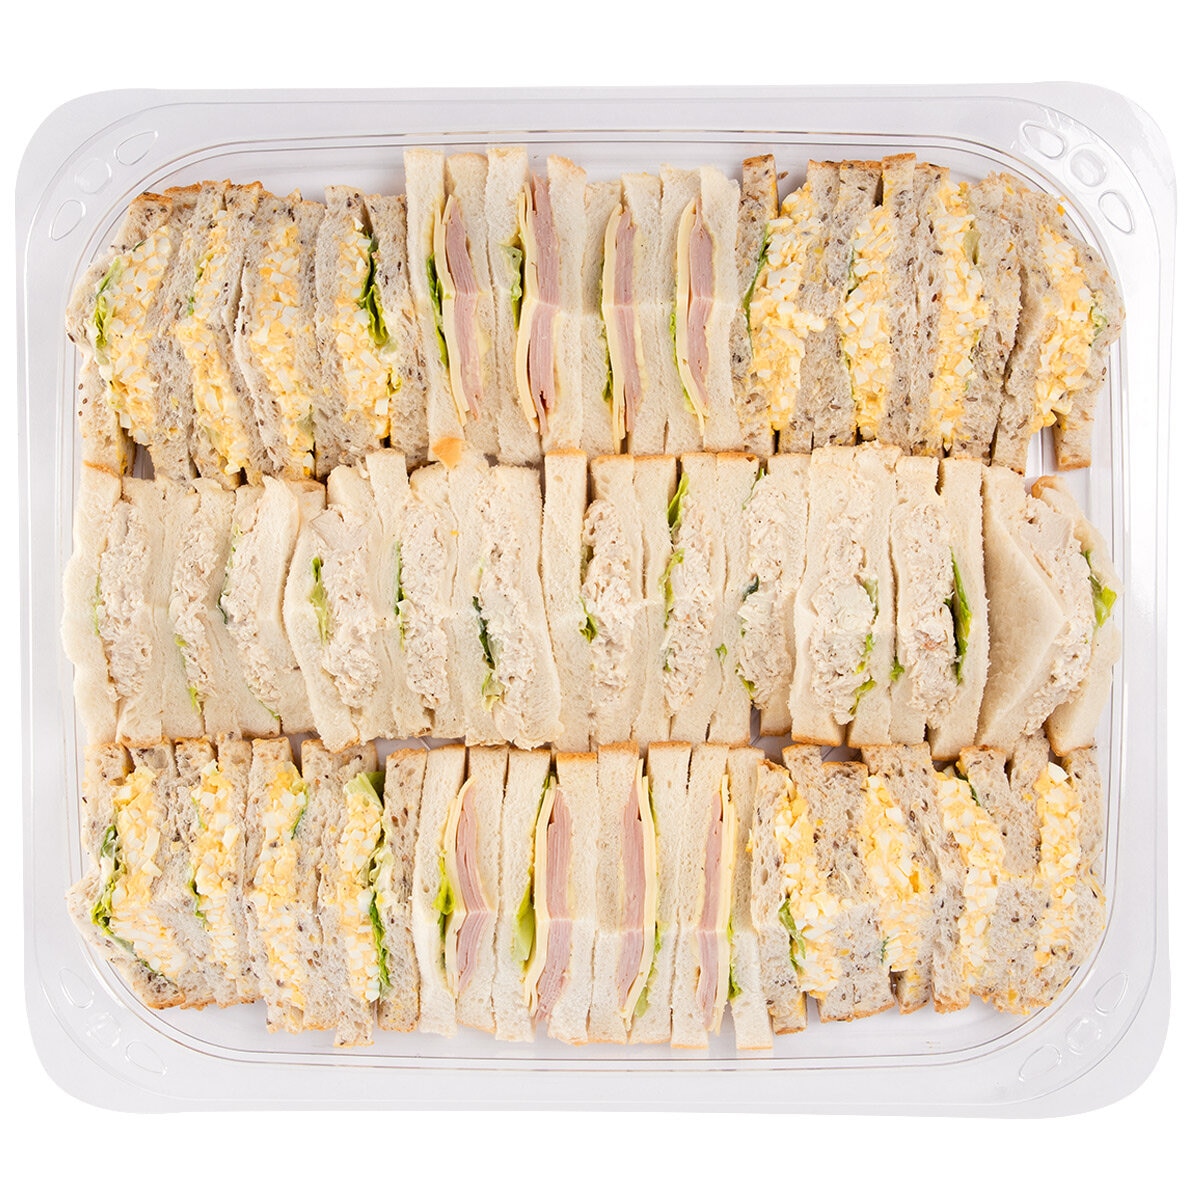 Costco Australia: Sandwich Platter | Costco Australia